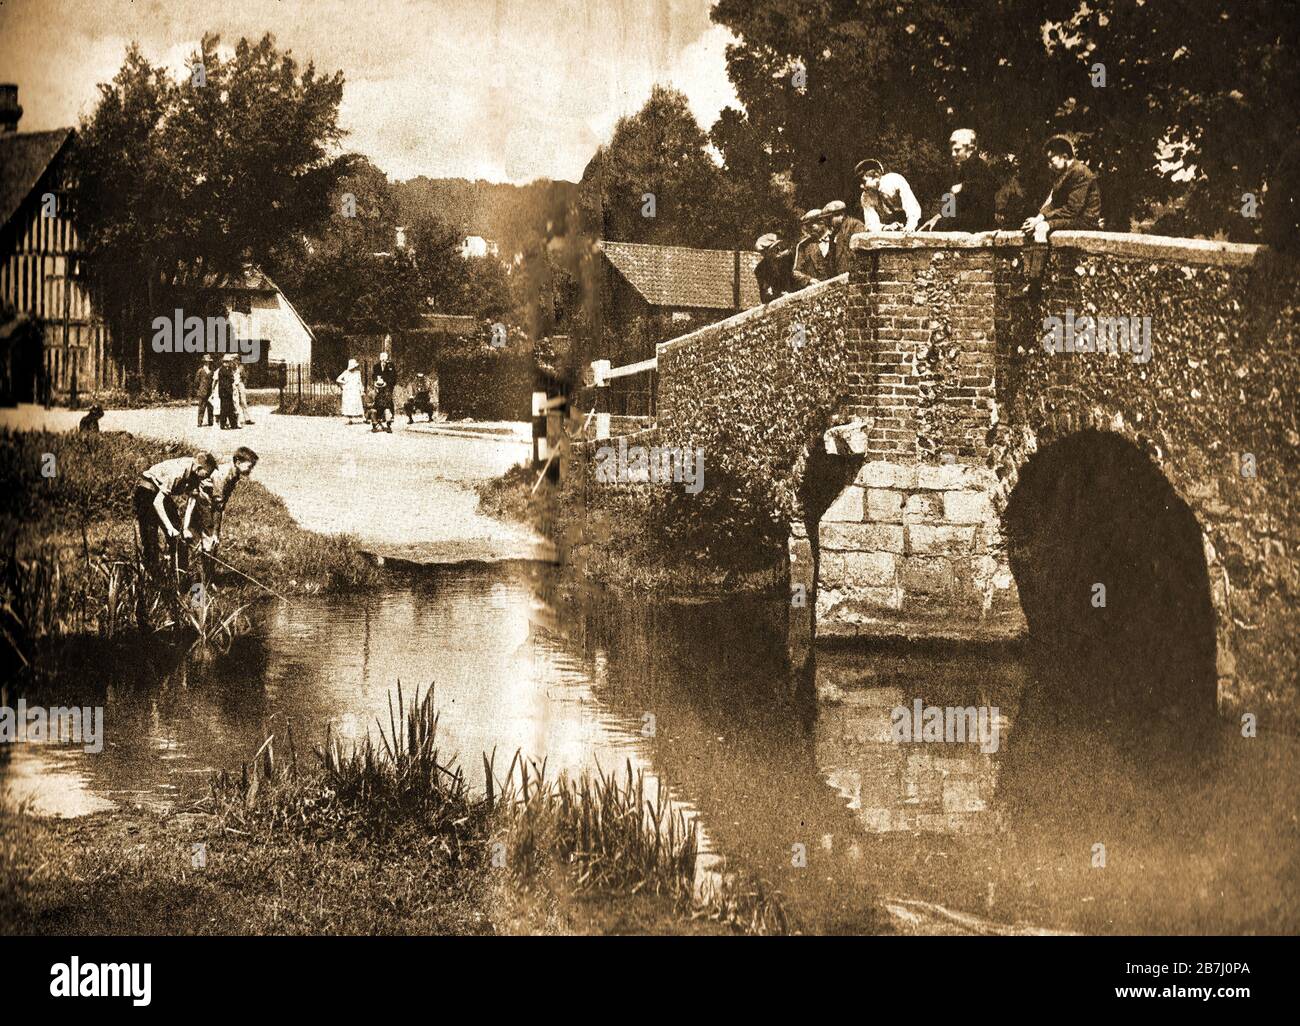 Une photographie ancienne de la ford au pont Eynsford Kent dans les années 1940. Les écoliers et les vieux hommes se tiennent sur le pont en regardant un père et un fils pêcher dans les jours calmes où le trafic automobile était rarement vu. Il a fatré au fil des ans à la télévision et dans les films , y compris une série de '20 miles de Piccadilly Circus' avec Alex Kennedy (Smithy), 'Sauve Lulingstone Castle' et une scène dans l'église locale dans 'Love réellement'.Eynsford a été d'abord documenté en 864 et a trois sites historiques, Lulingstone Castle, Eynsford Castle, et une villa romaine Banque D'Images